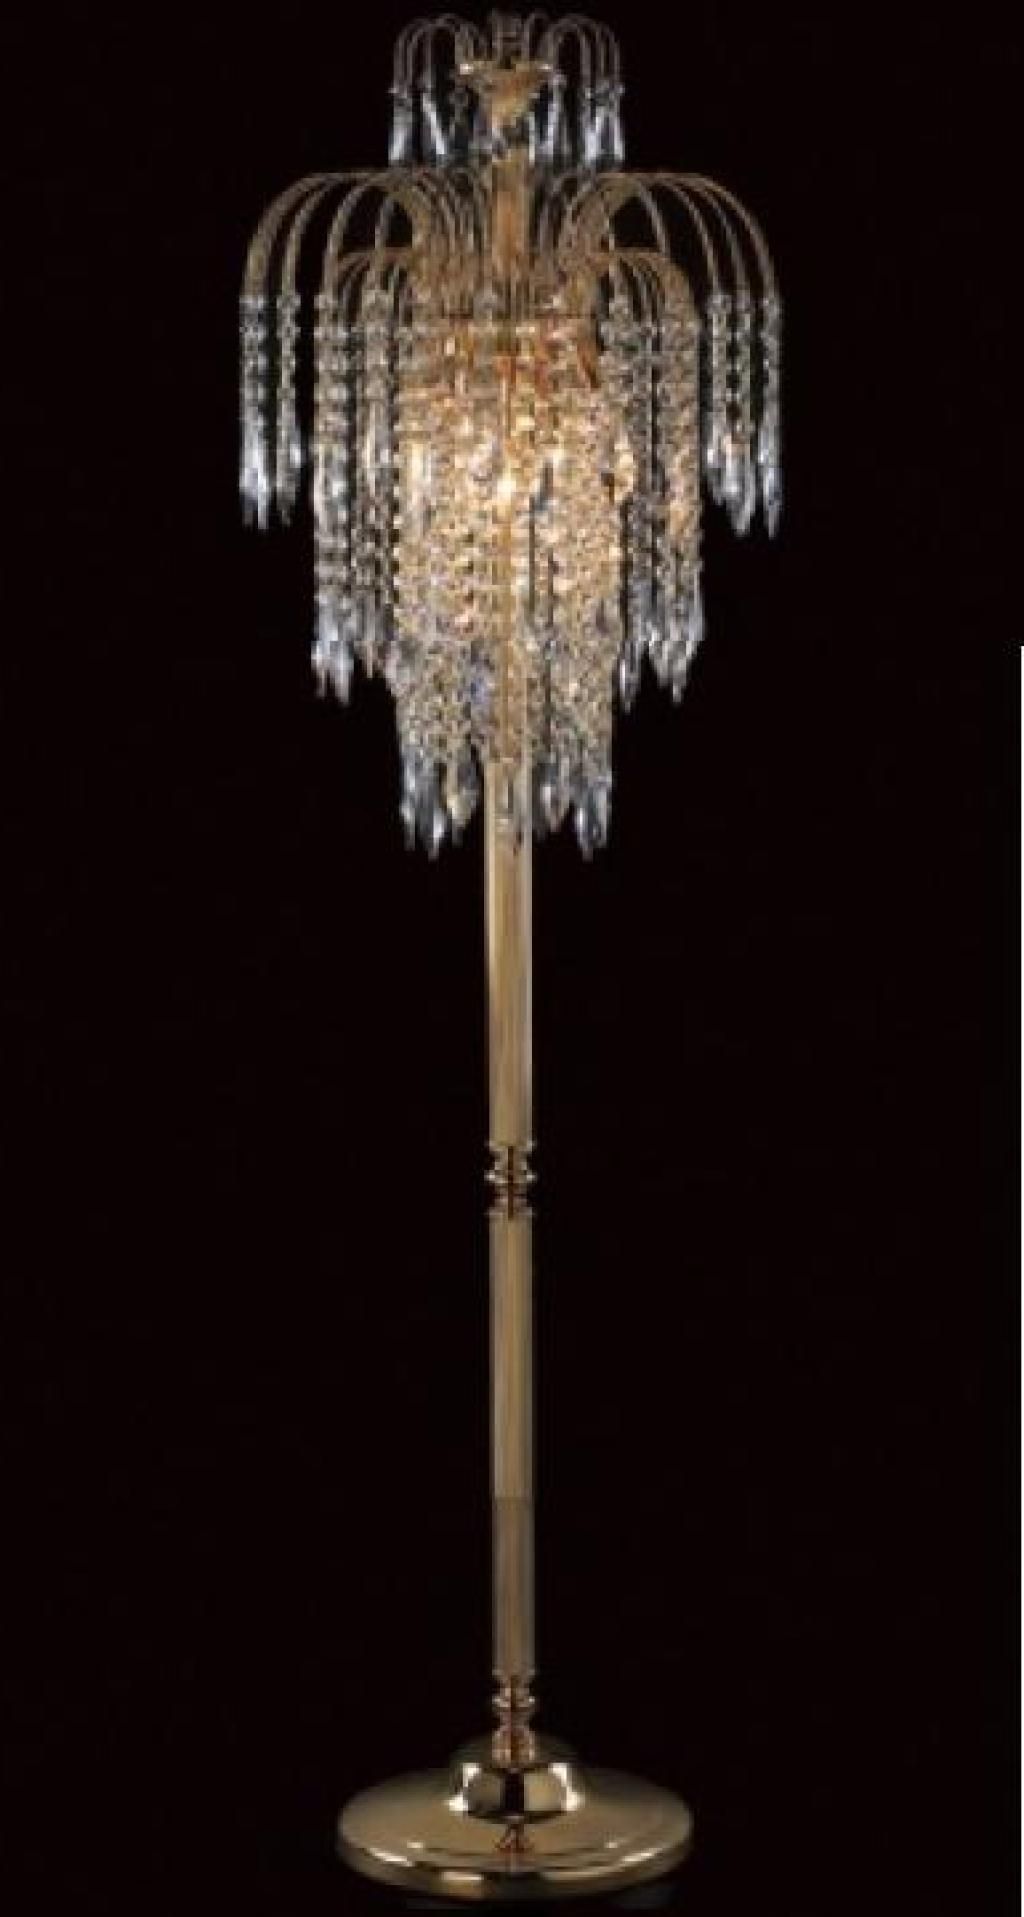 Free Standing Chandelier Lamps Regarding Famous Standing Chandelier Floor Lamp – Chandelier Designs (View 2 of 15)